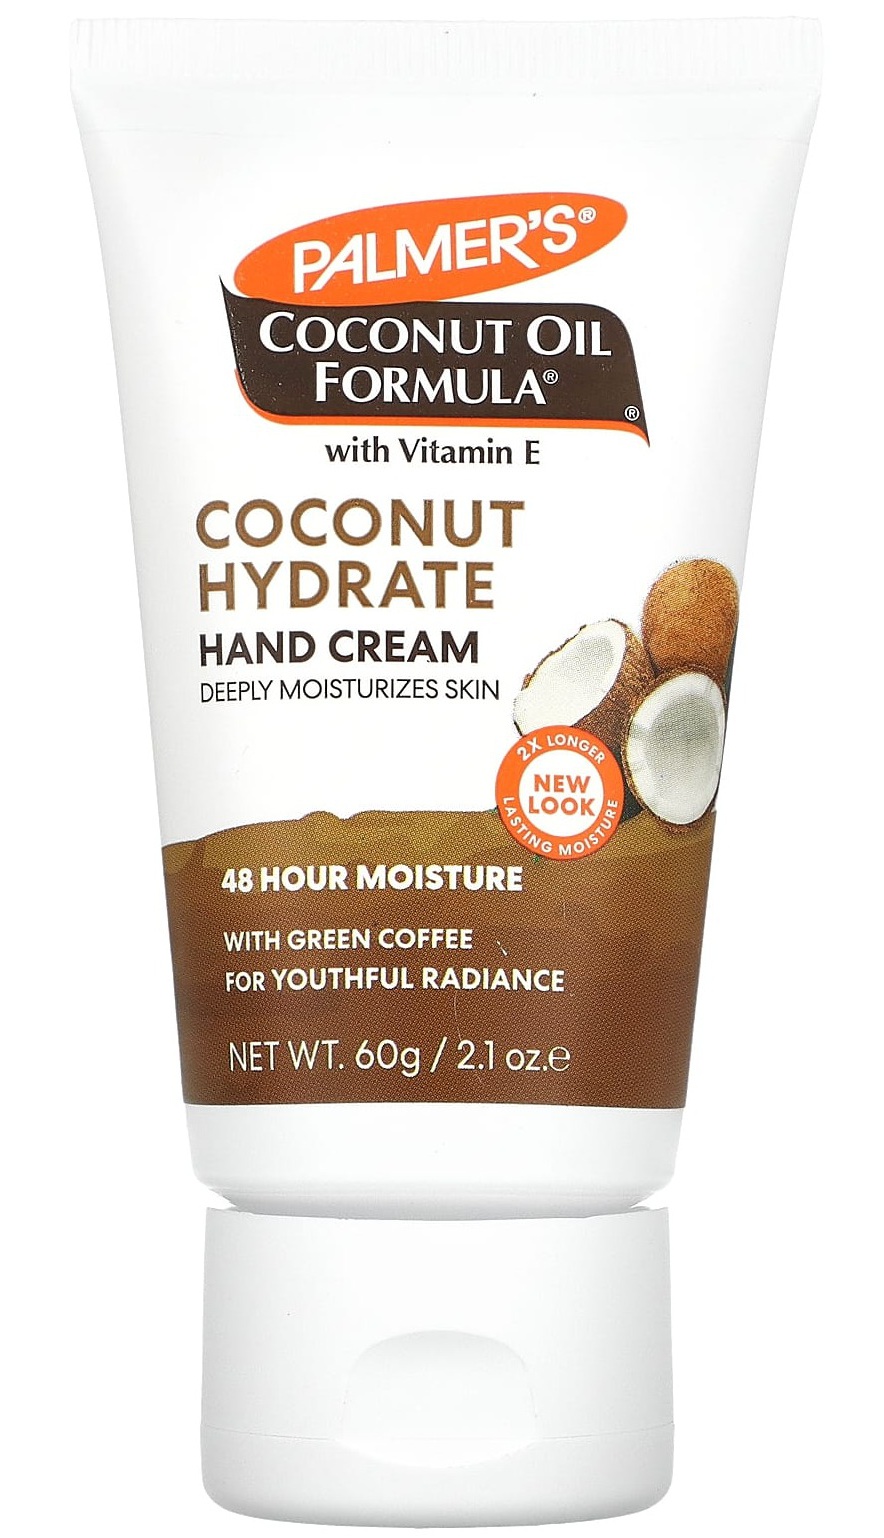 Palmer's Coconut Oil Formula Coconut Hydrate Hand Cream